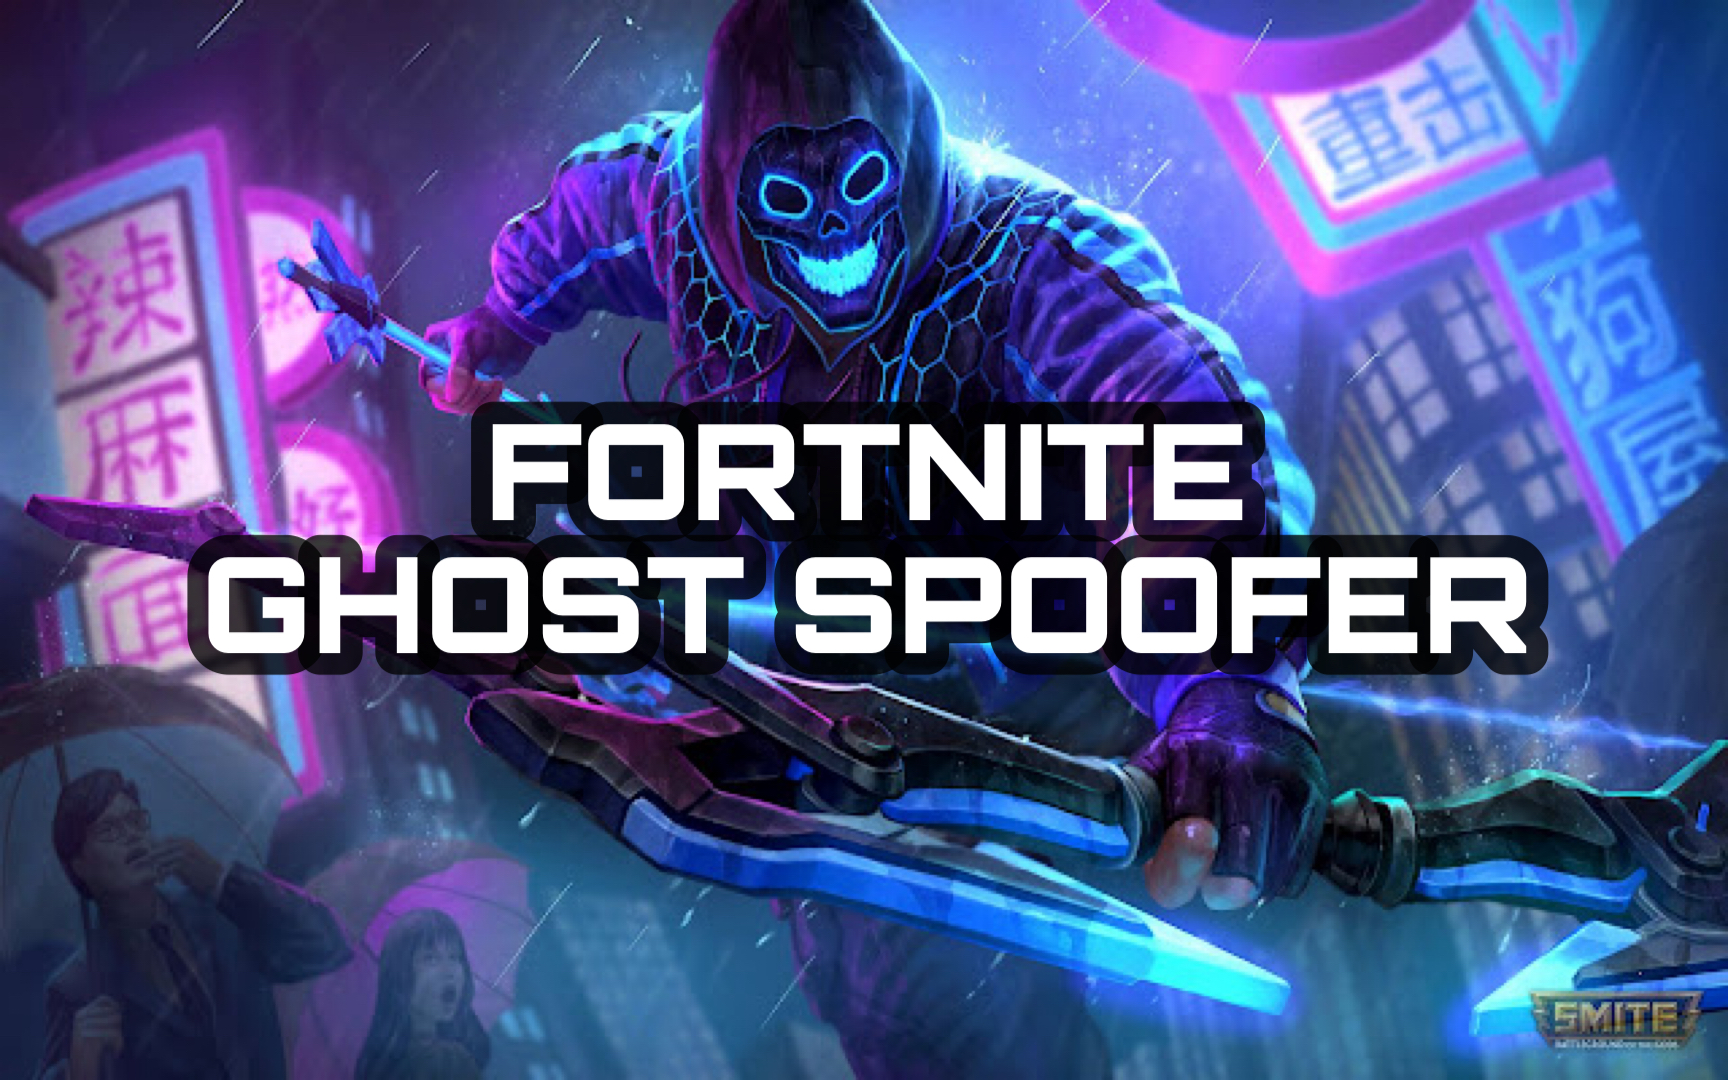 Fortnite Ghost Spoofer - 1 Week